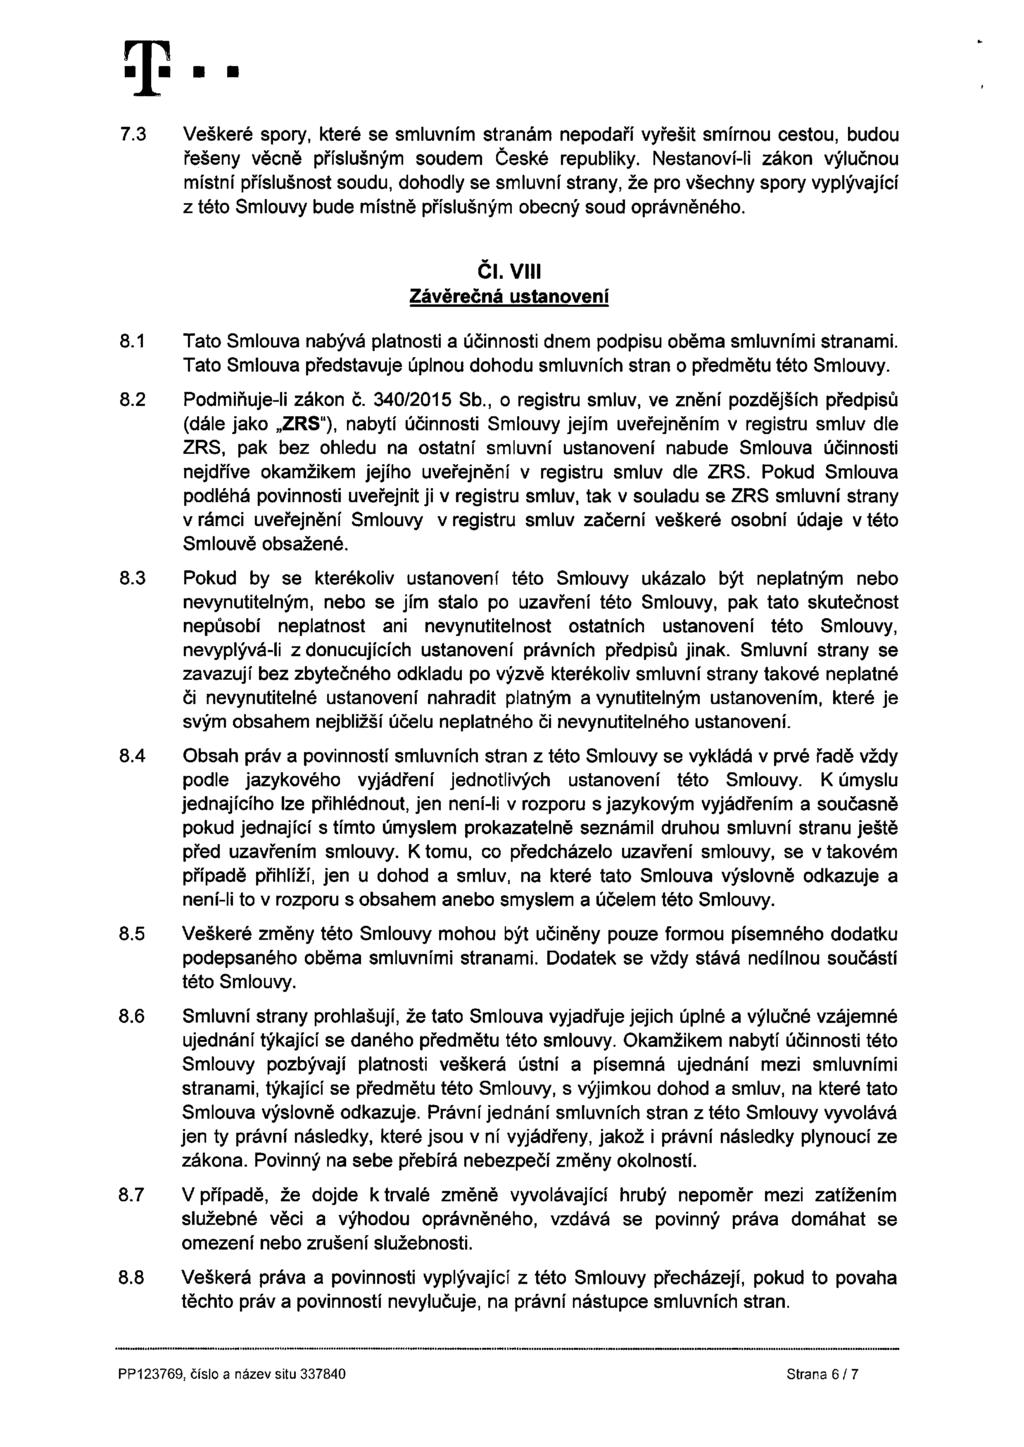 7.3 Veškeré spory, které se smluvním stranám nepodaří vyřešit smírnou cestou, budou řešeny věcně příslušným soudem České republiky.